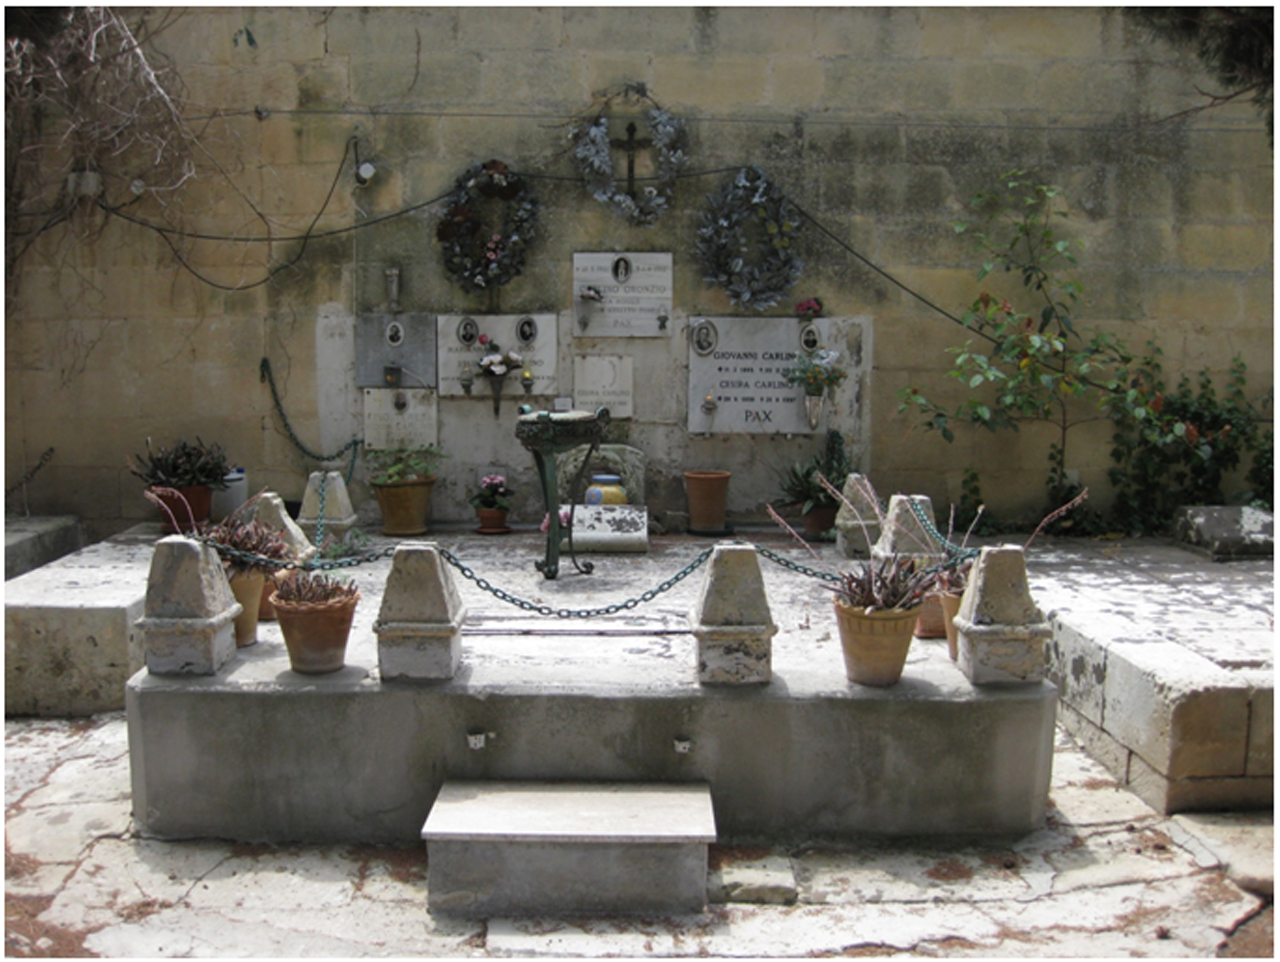 Pietro Baglivi (tomba, tomba pavimentale a fossa) - Lecce (LE) 